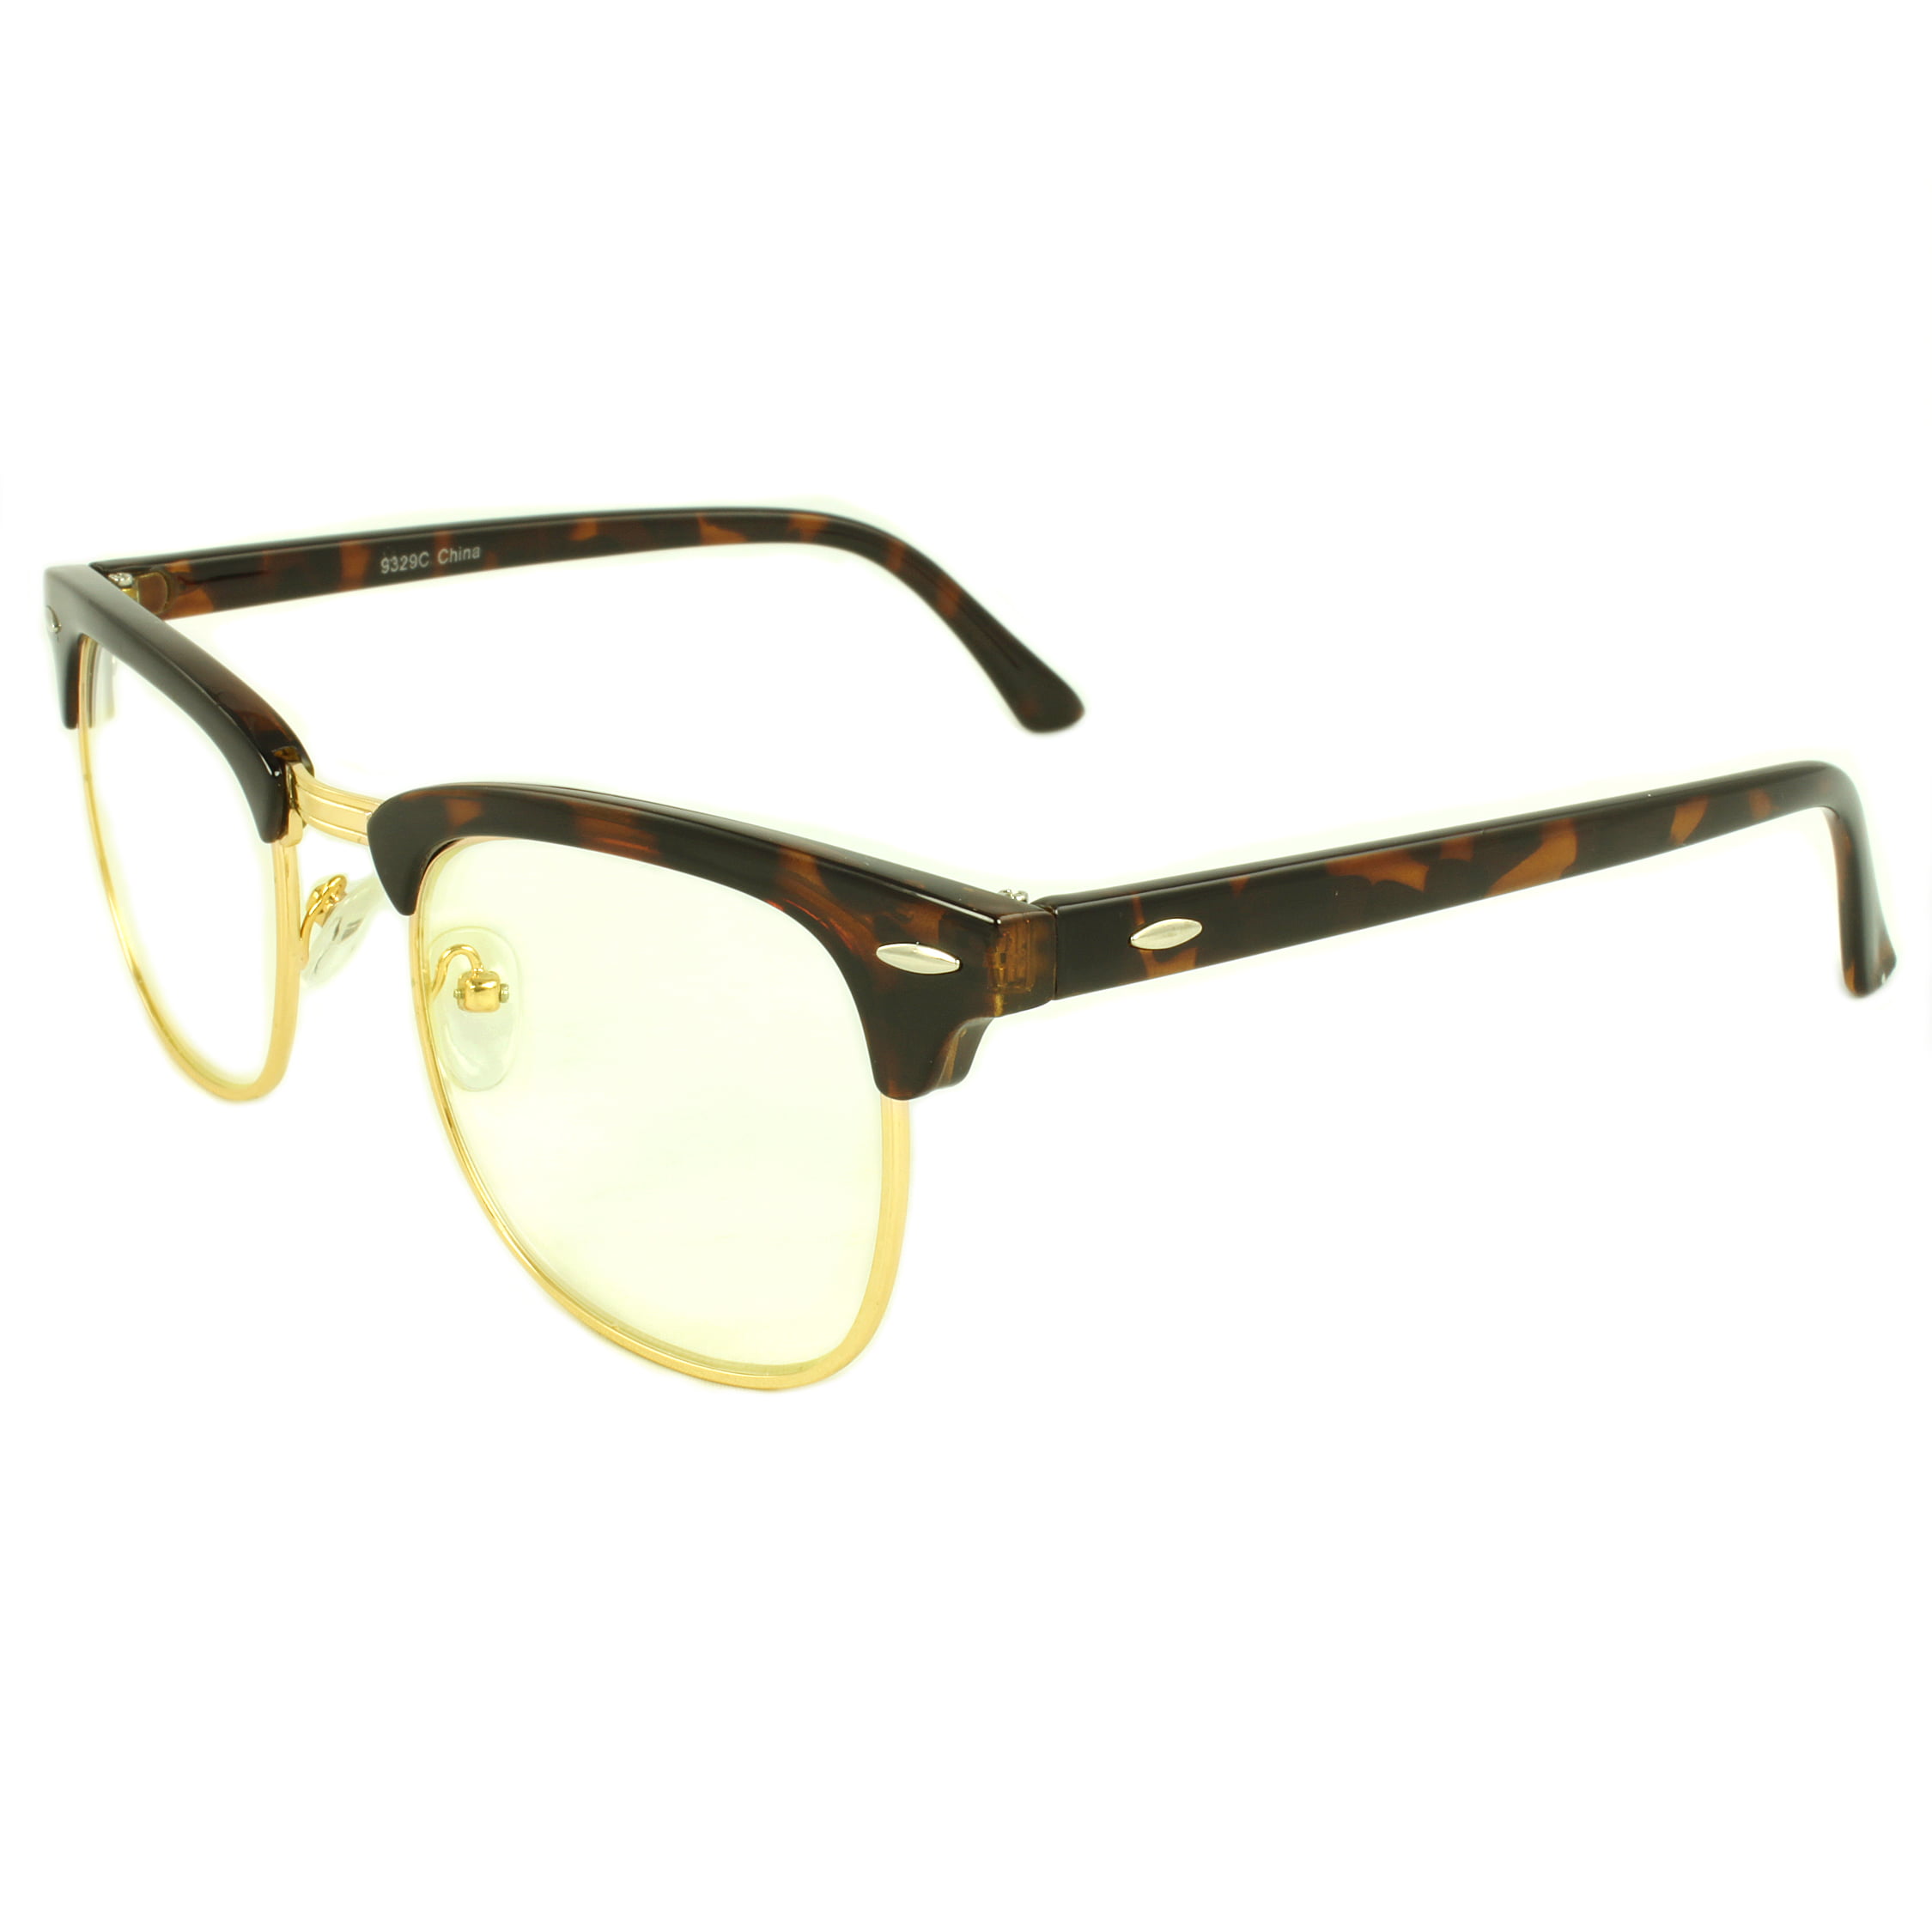 Half Frame Sunglasses White and Golden color Frame Retro Soho Shades Half Brow